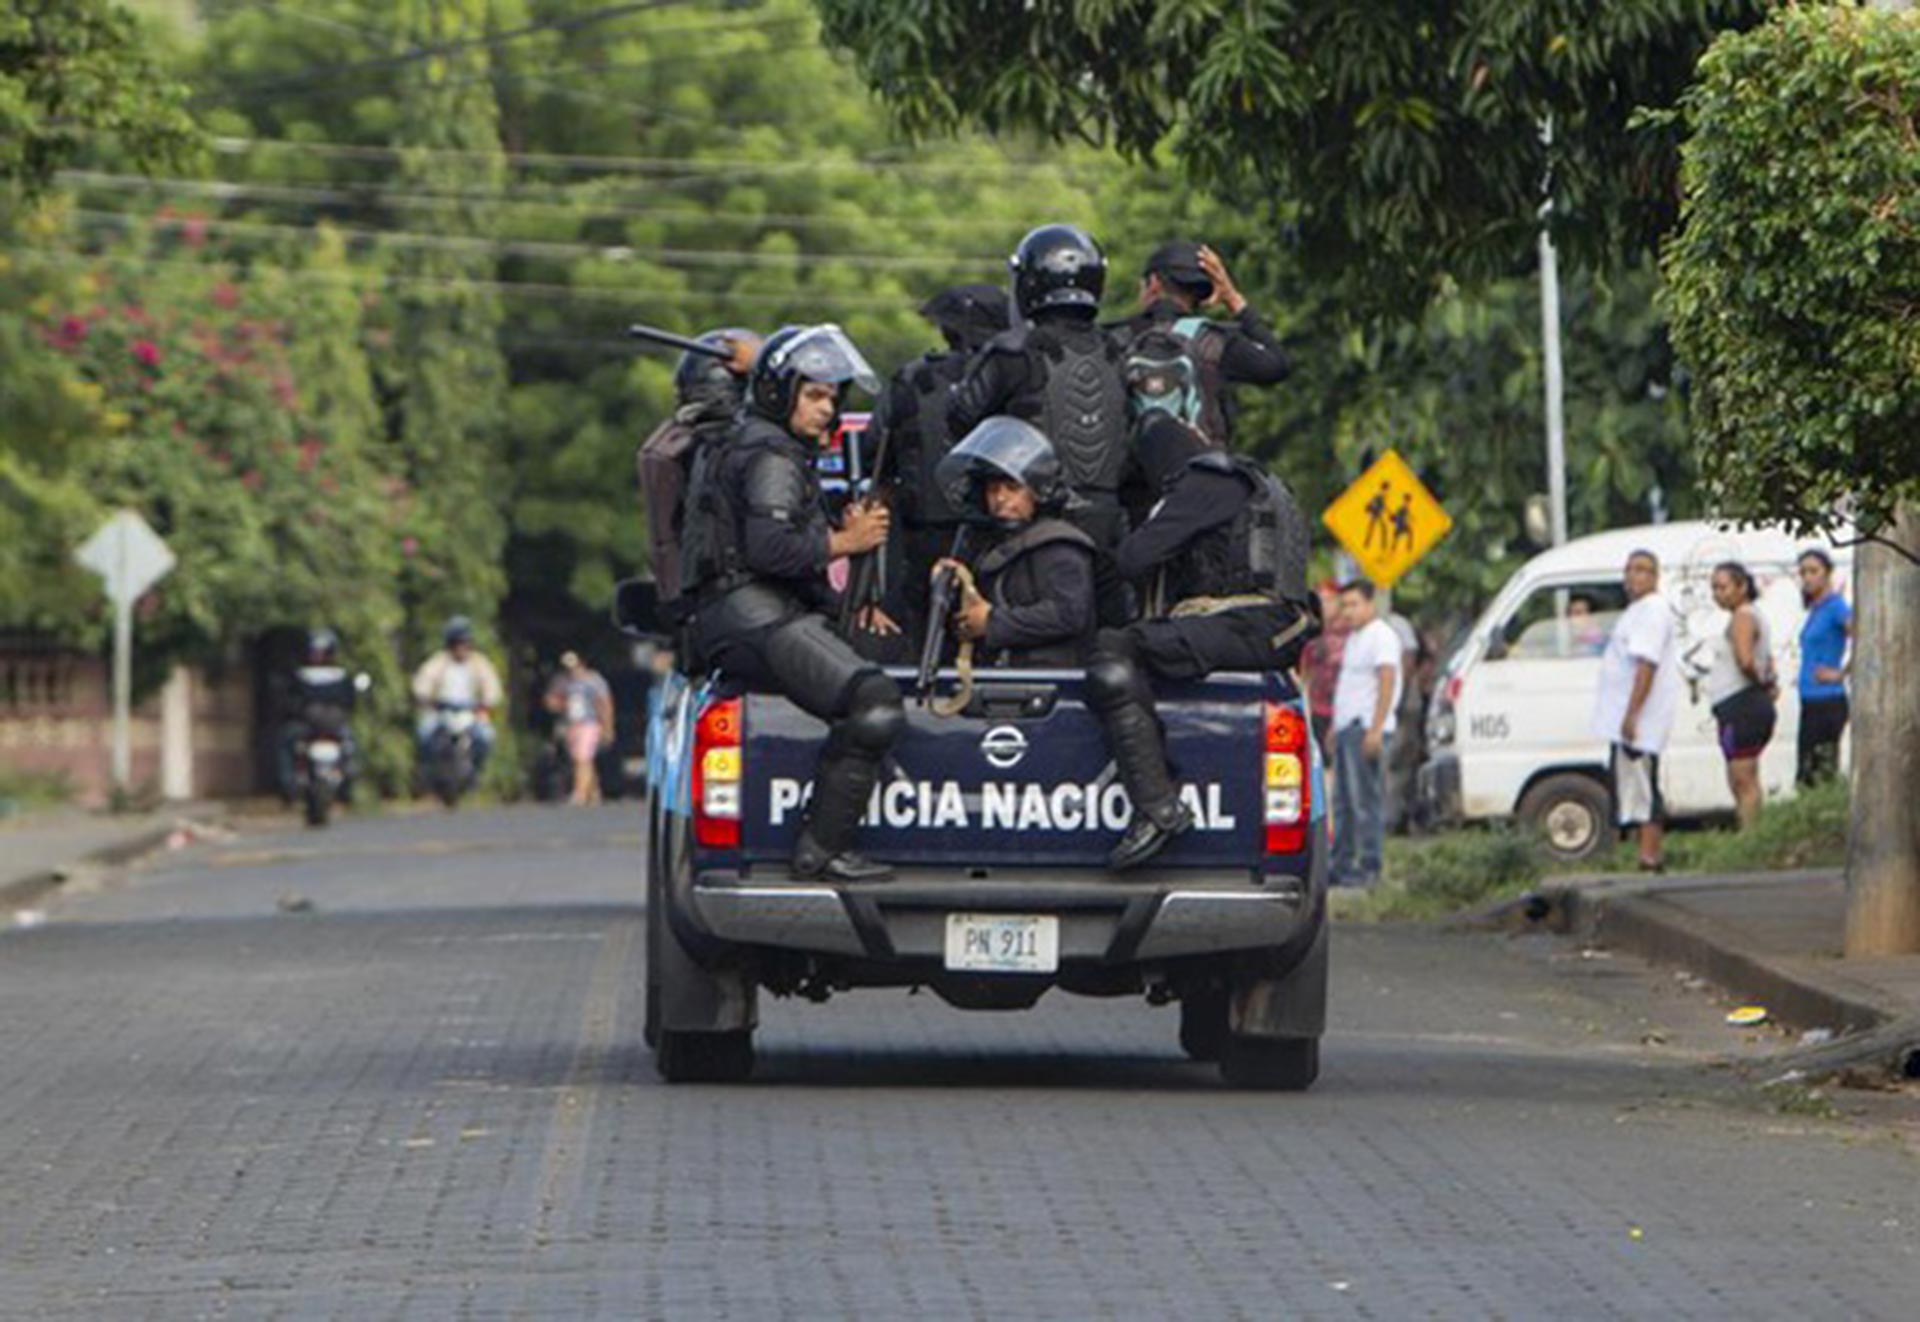 La Policía nicaragüense tiene ahora la facultad legal de autorizar o prohibir manifestaciones públicas en campaña electoral. (Foto EFE)
